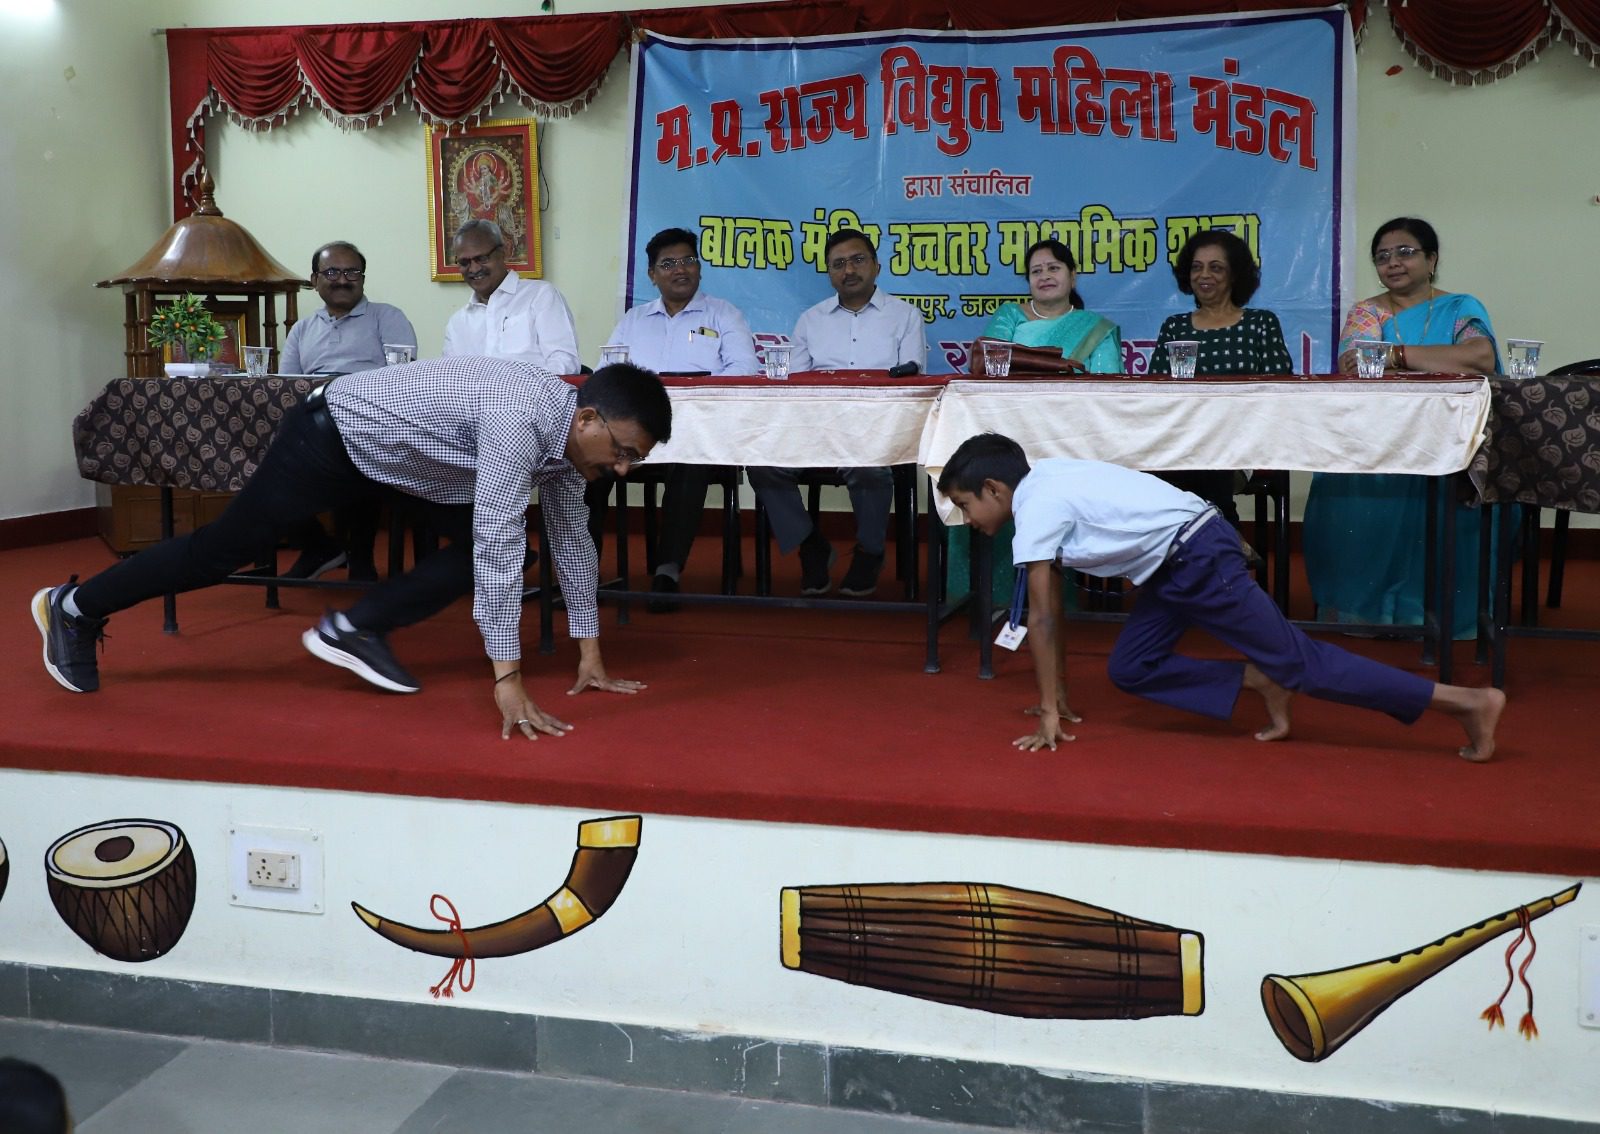 स्कूली छात्रों को स्वास्थ्य के प्रति जागरूक करने मध्यप्रदेश विद्युत मंडल बालक मंदिर स्कूल में आयोजित हुआ स्वास्थ्य शिविर